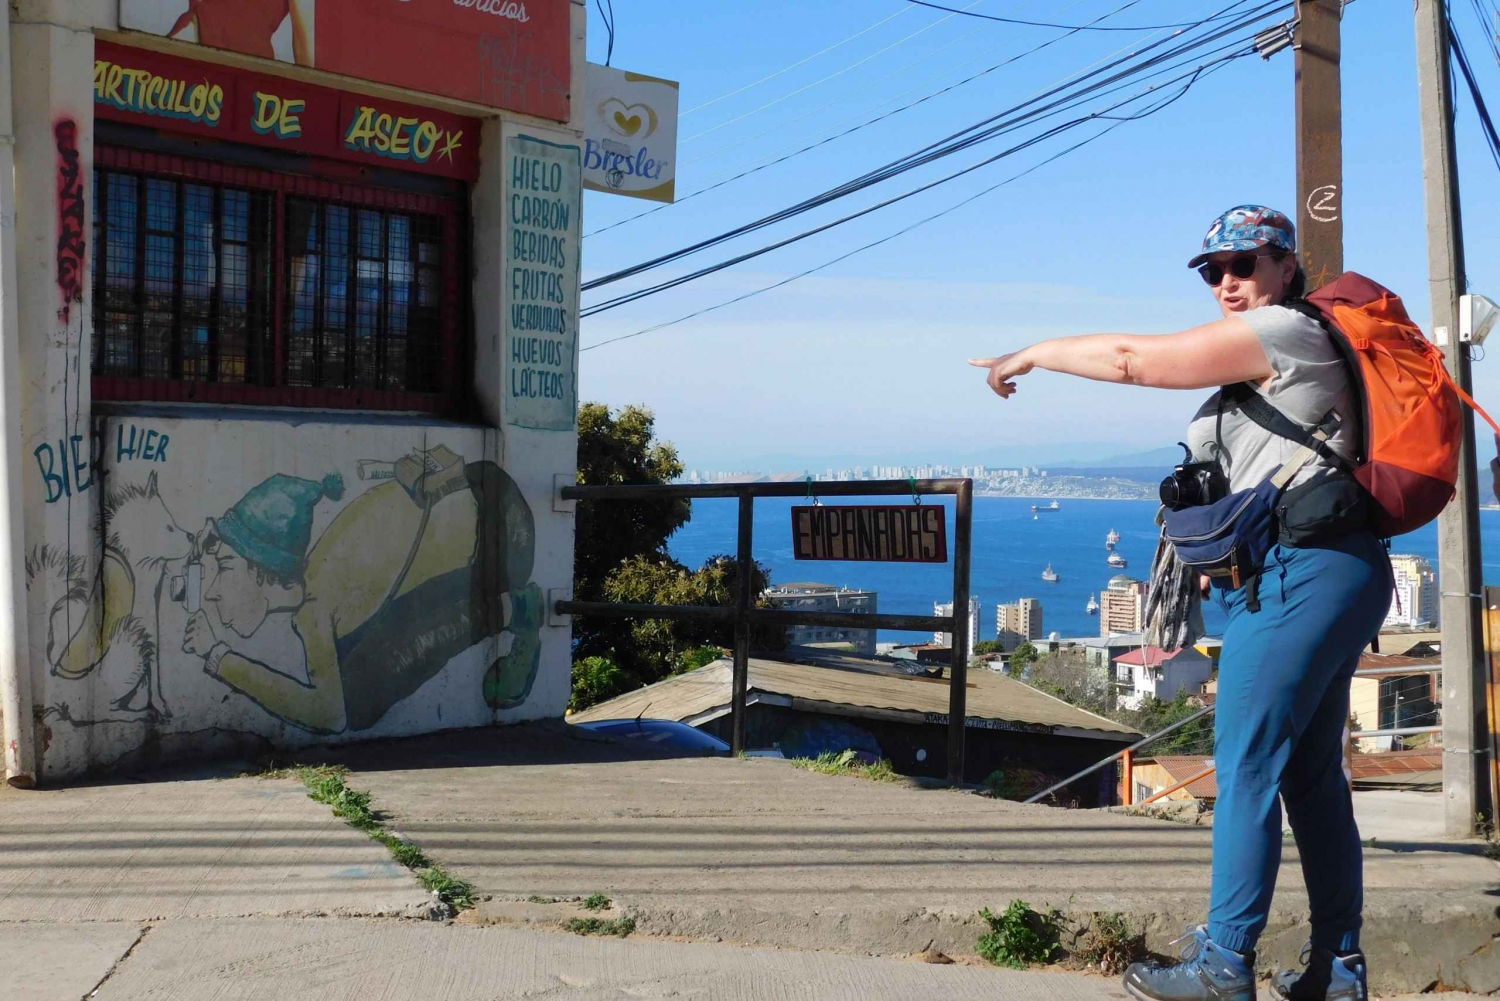 Valparaíso pieszo i w kolorze: odkryj jego ukryte skarby